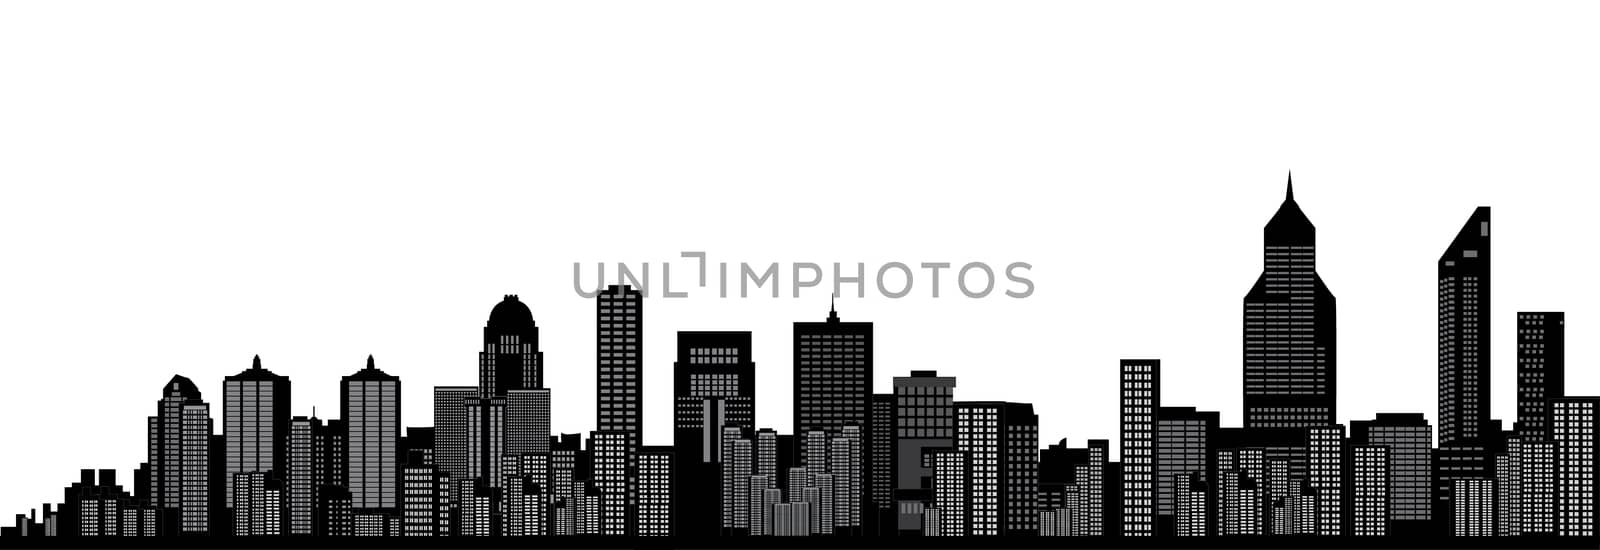 city skyline by compuinfoto